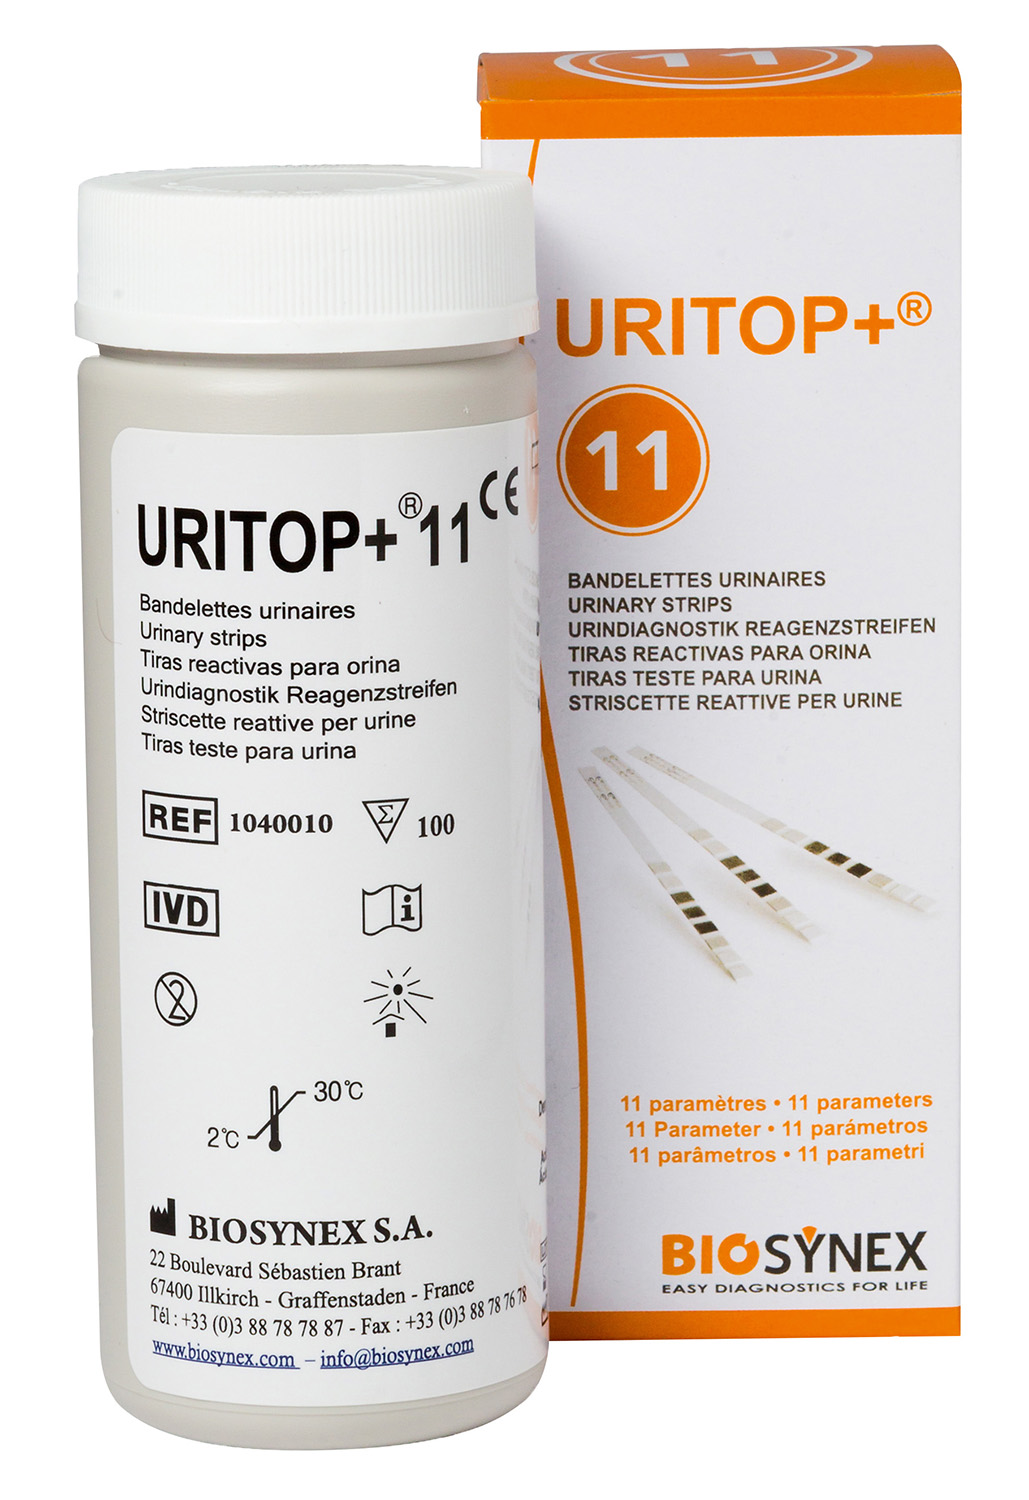 Bandelette urinaire uritop +7 Paramètres - Bioconnect